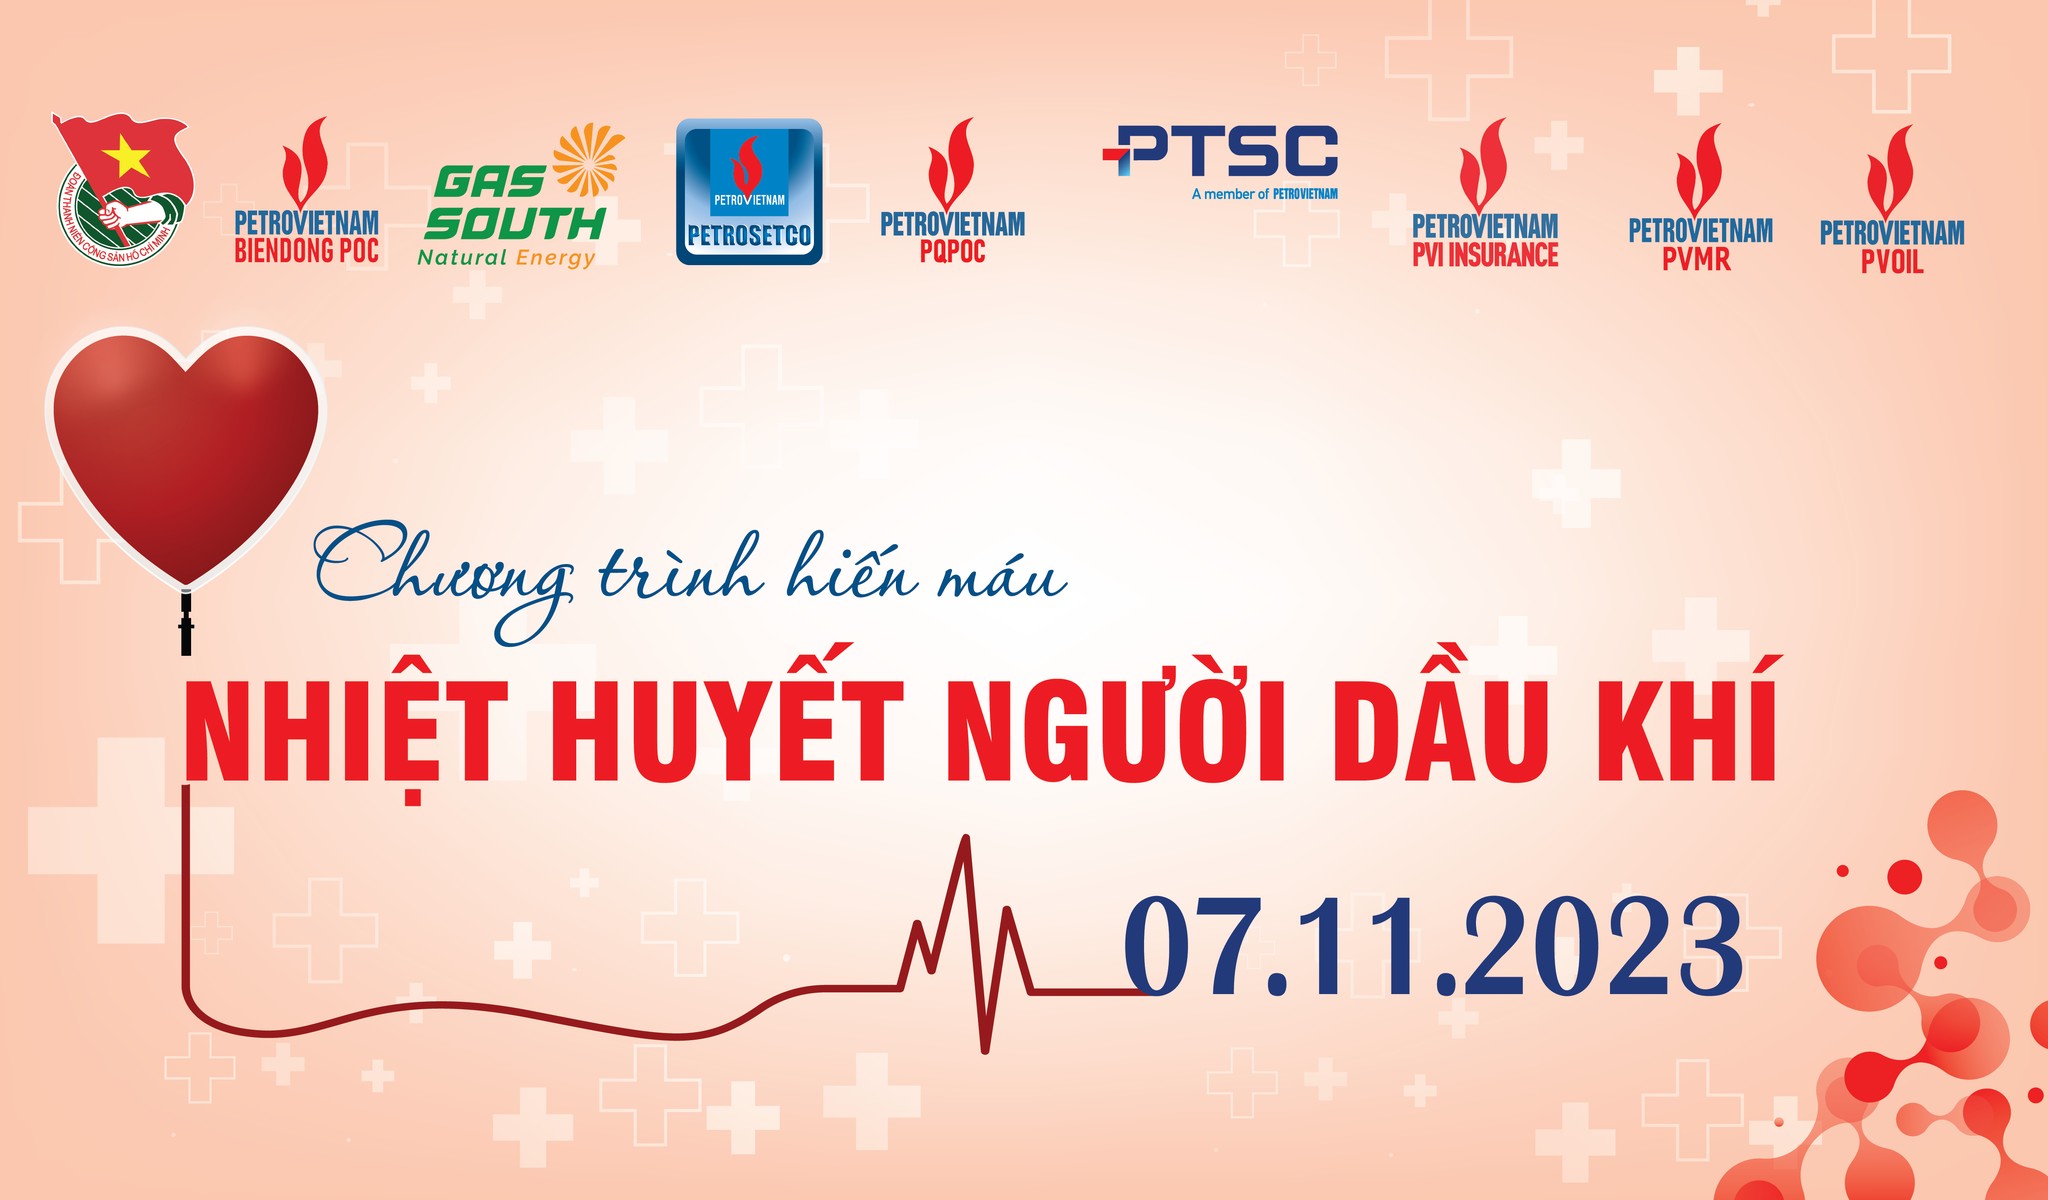 Đoàn Thanh niên PETROSETCO phối hợp với các đơn vị tổ chức hiến máu tình nguyện "Nhiệt huyết Người dầu khí 2023".